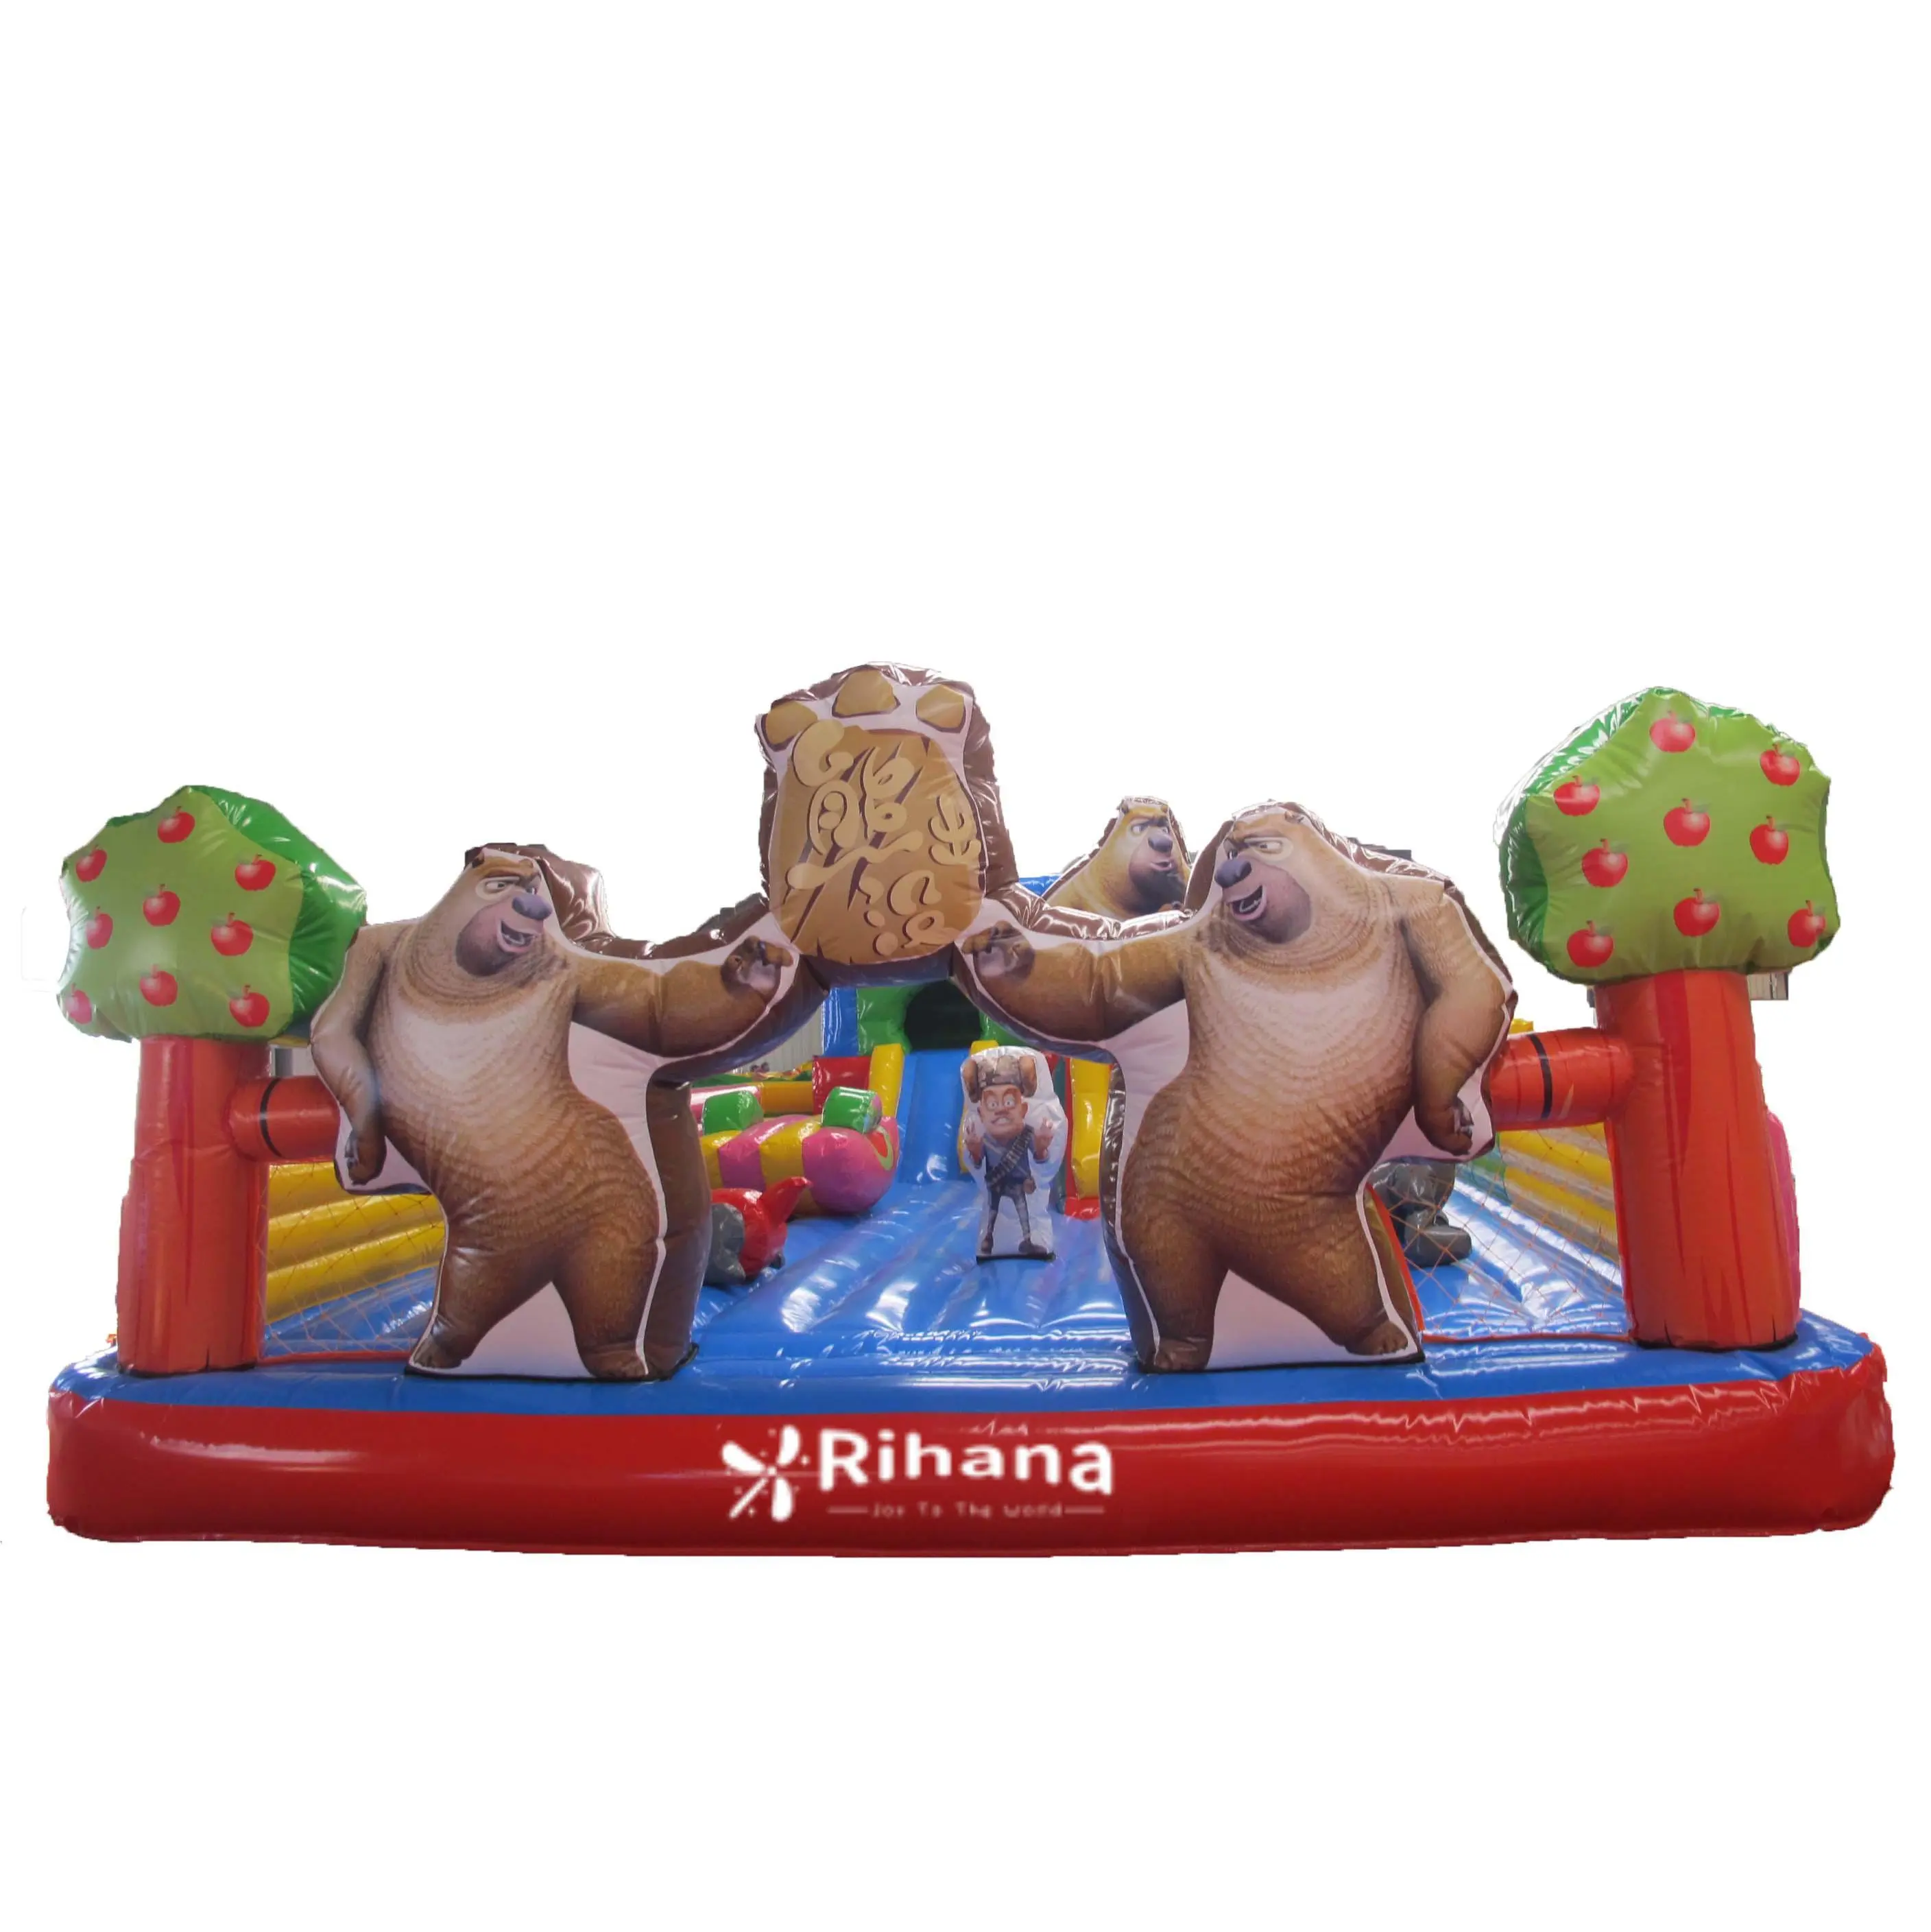 Boonie gấu theo chủ đề Inflatable Slide thích hợp cho trong nhà và ngoài trời trò chơi bơm hơi trong vui chơi giải trí thành phố